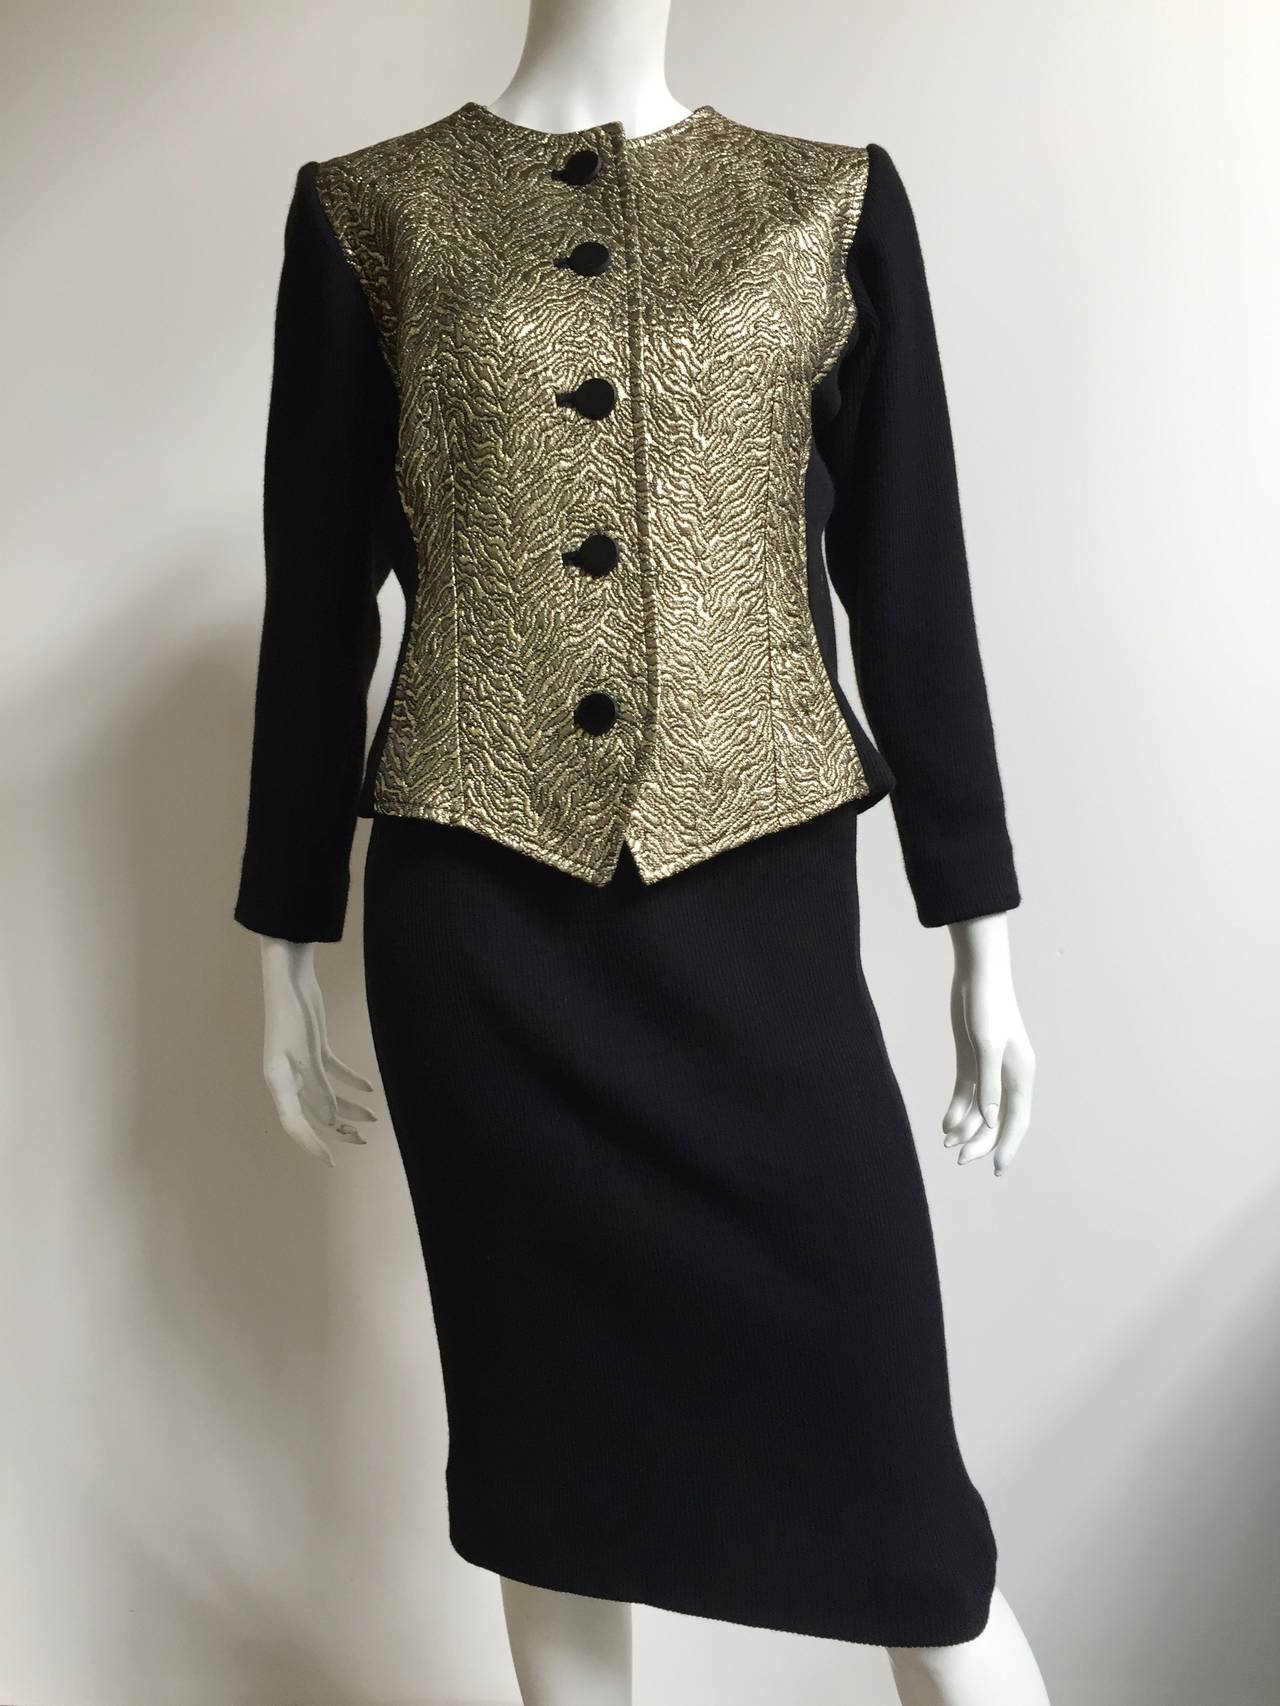 Saint Laurent Rive Gauche Gold Jacquard Knit Suit Size 6 / 8. For Sale 5